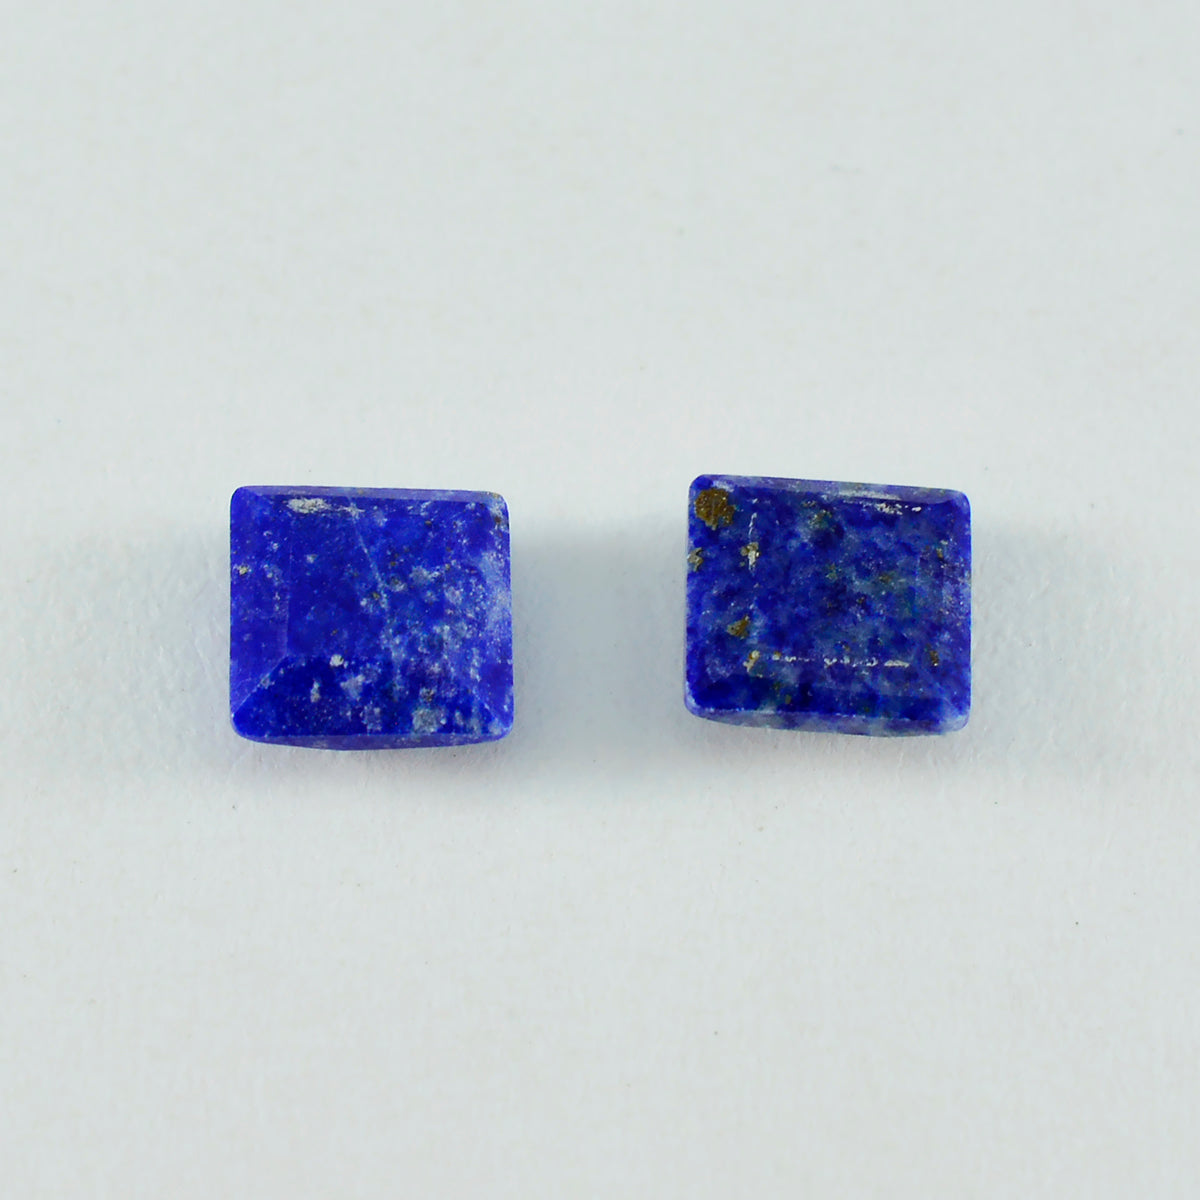 Riyogems 1 Stück echter blauer Lapislazuli, facettiert, 15 x 15 mm, quadratische Form, wunderbare Qualitätsedelsteine